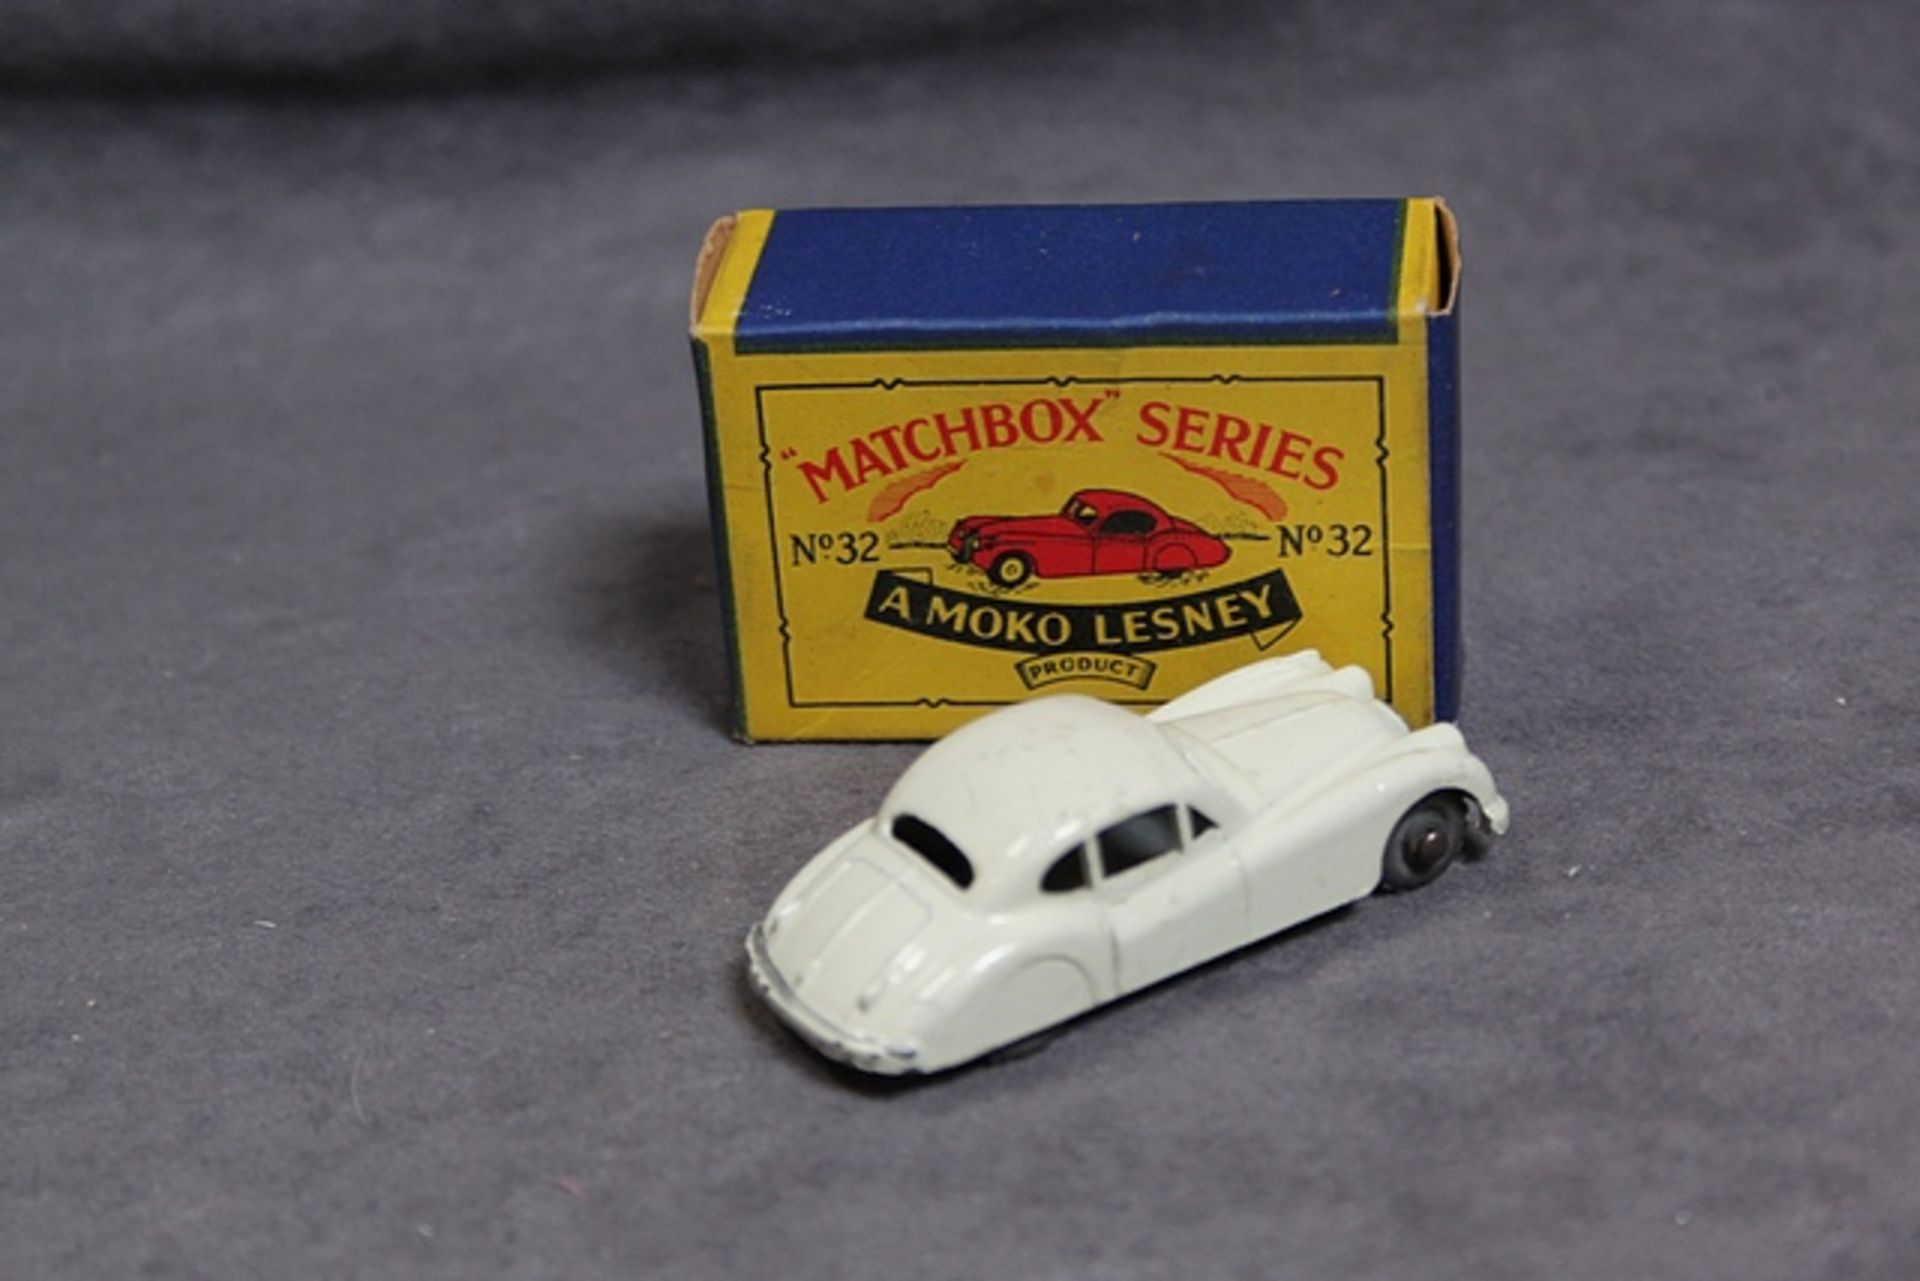 Matchbox Moko Lesney Diecast #32a Jaguar XK 140 off white model mint slight box rubbing on roof in